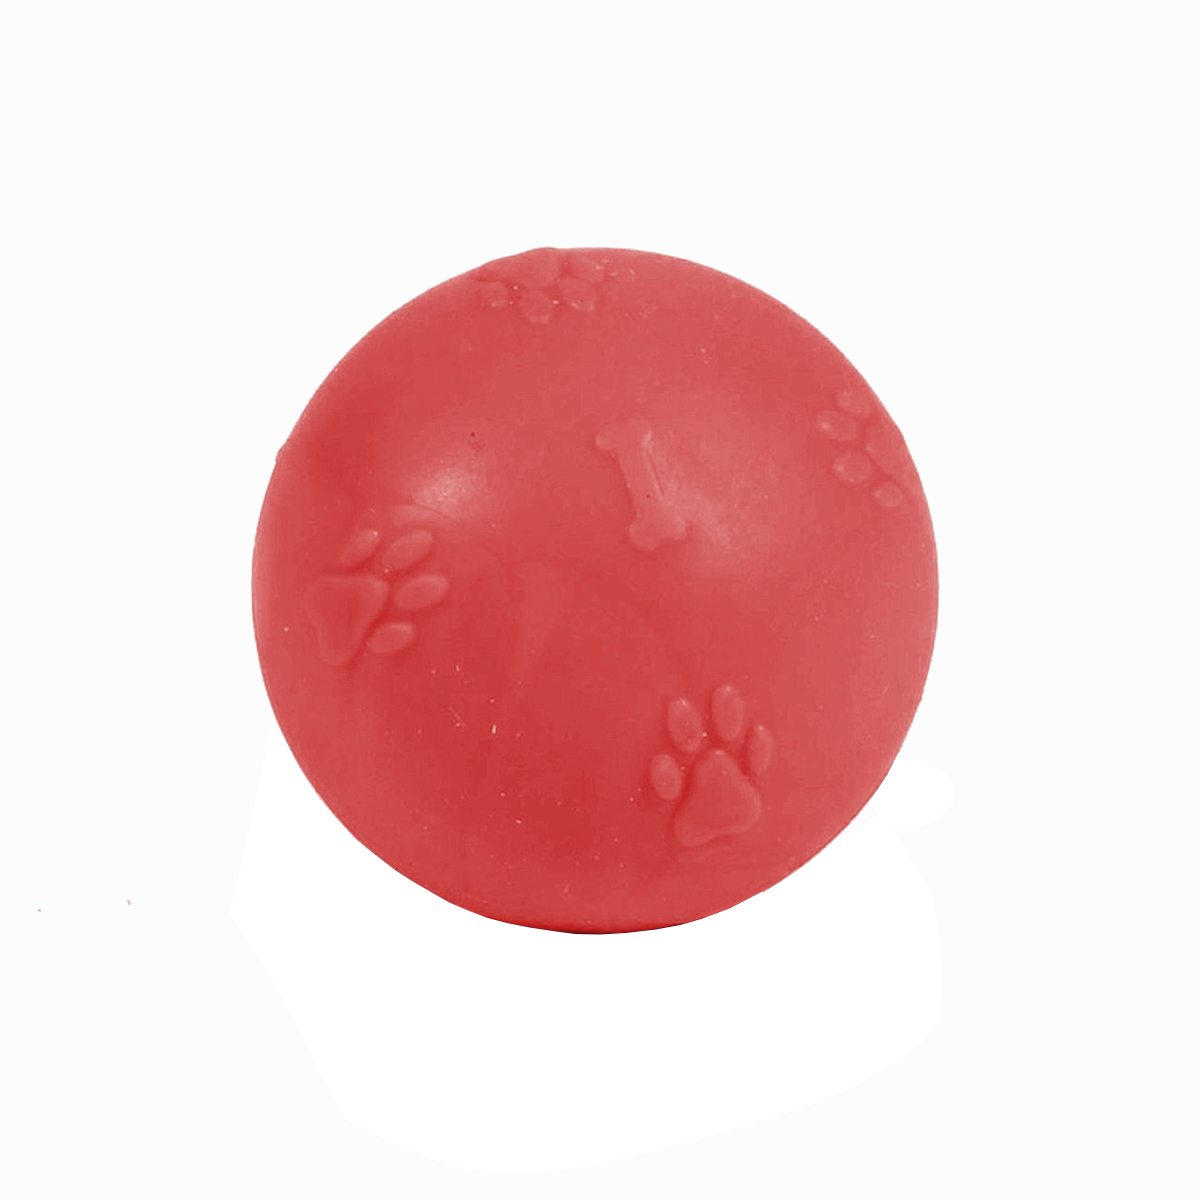 CLZ205 Pati Desenli Sert Köpek Oyun Topu 8 cm Large Kırmızı